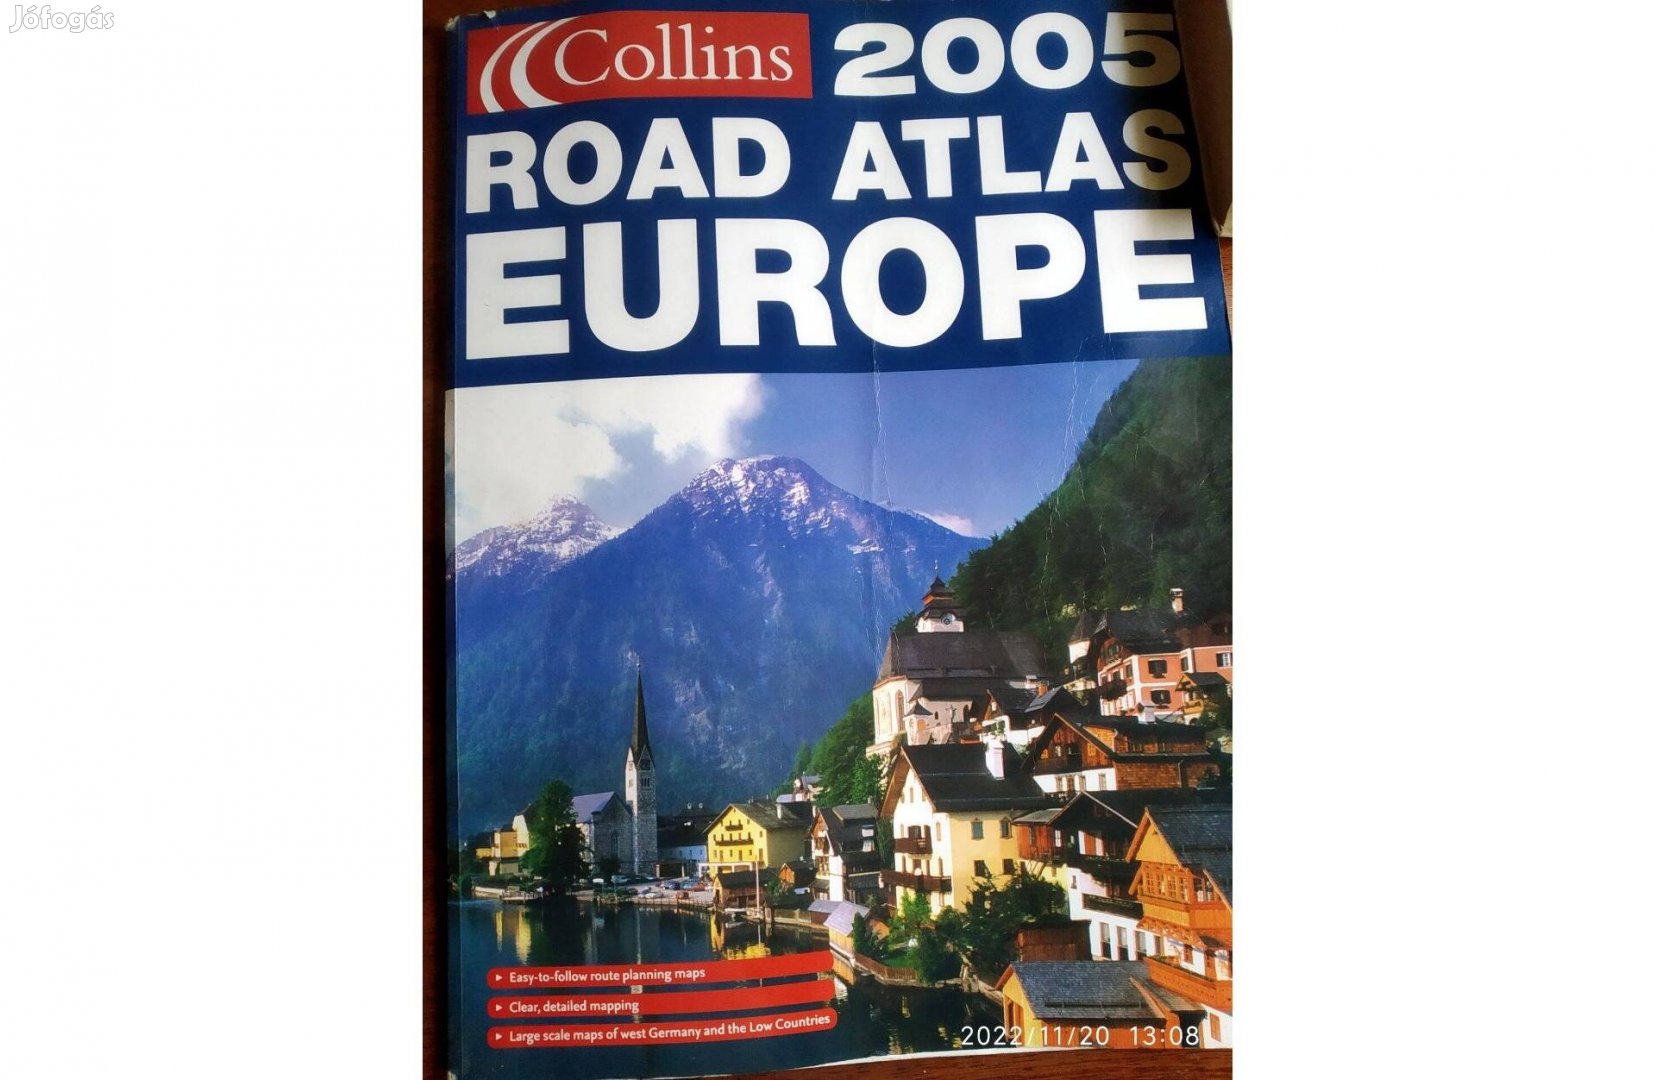 Európa autóatlasza Collins Road ATLAS Europa